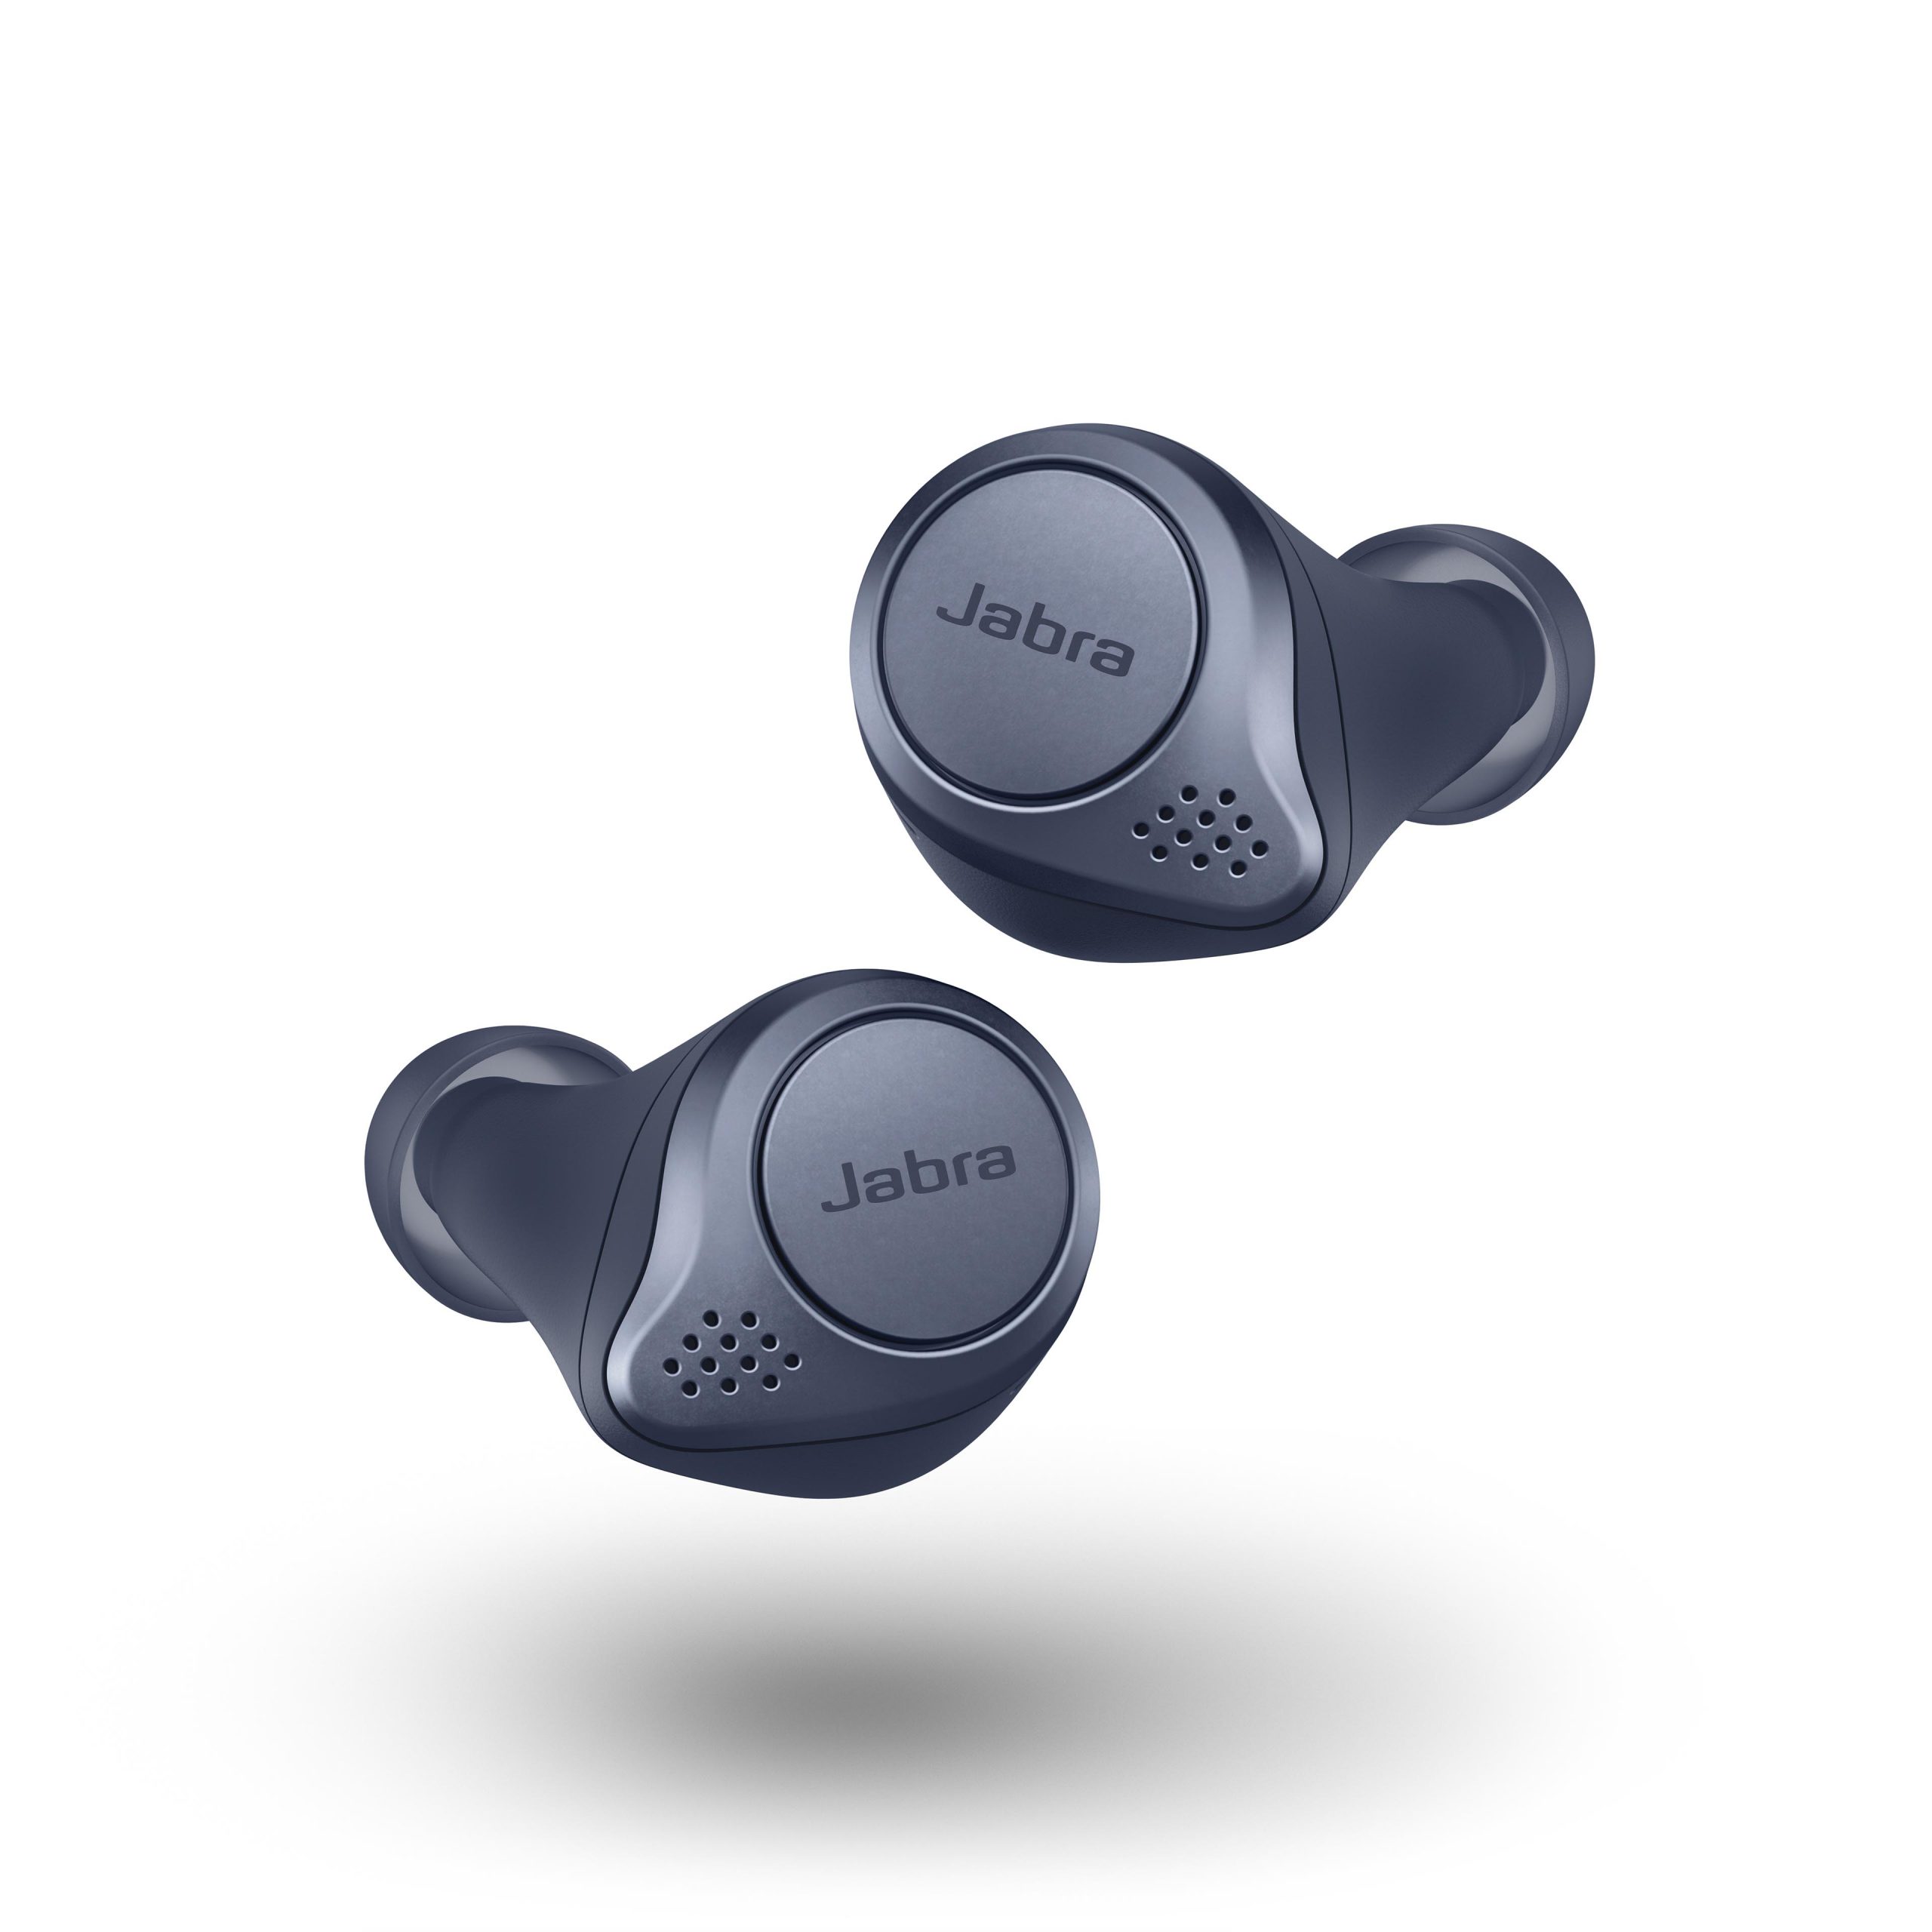 อาร์ทีบีฯ ตอกย้ำผู้นำตลาดหูฟัง True Wireless ส่งหูฟังสปอร์ต Jabra Elite Active 75t จัดเต็มคุณภาพ